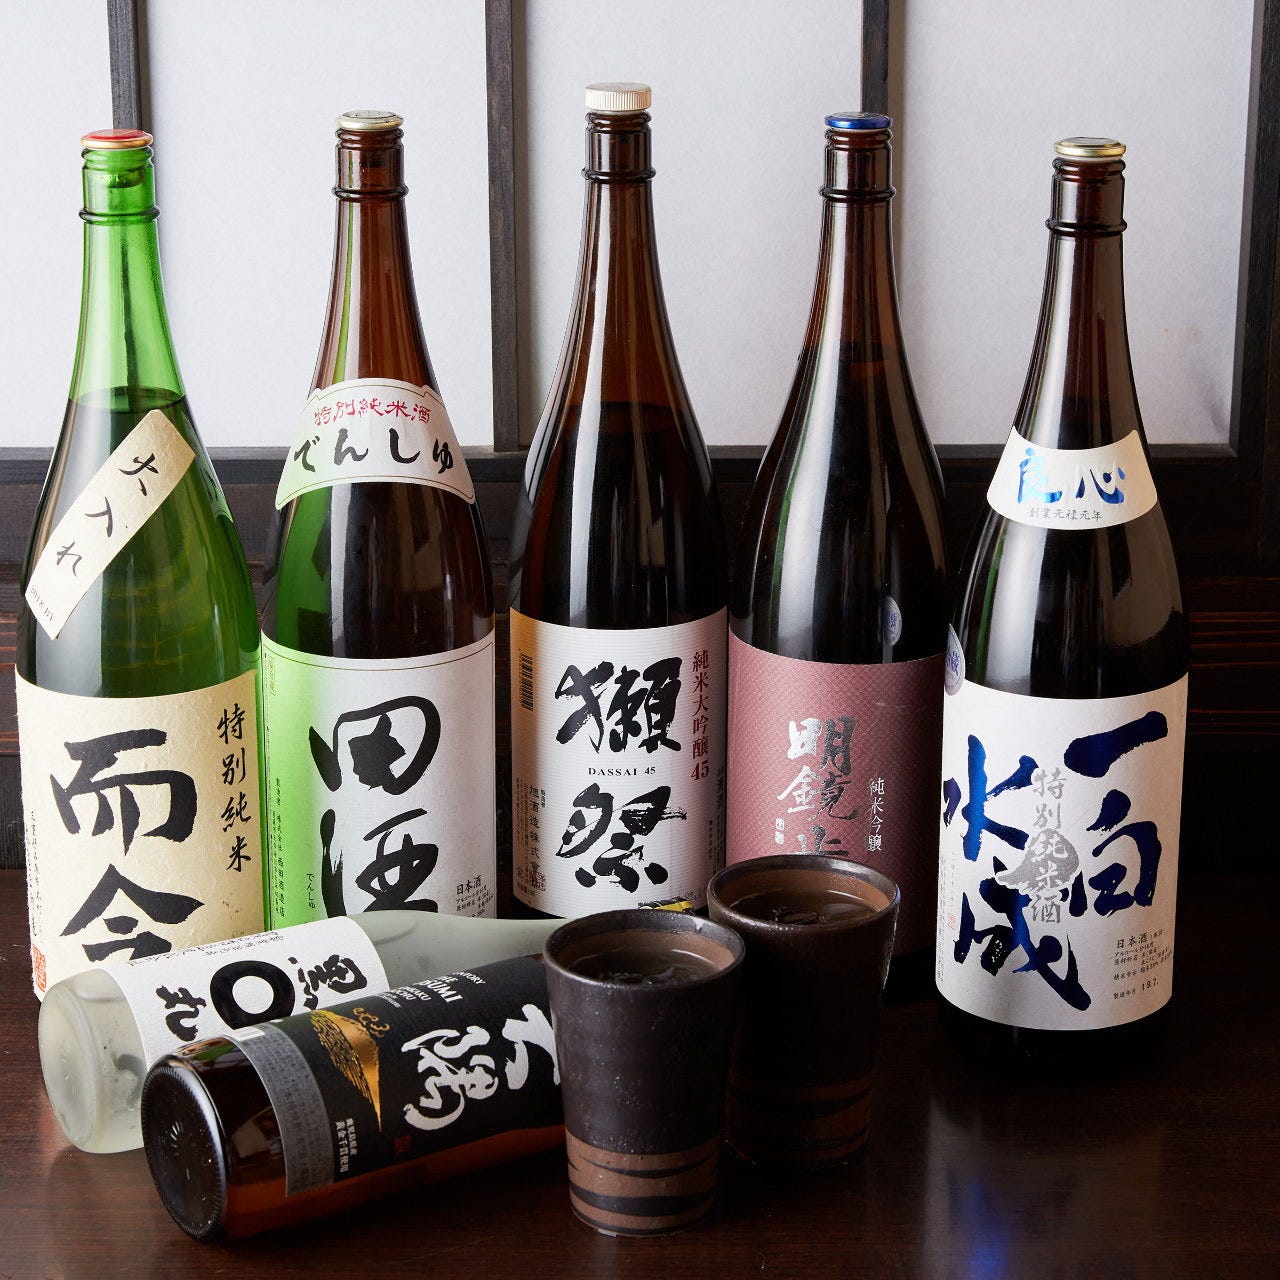 多彩な日本酒は当店を楽しむうえで欠かせないアイテムです。